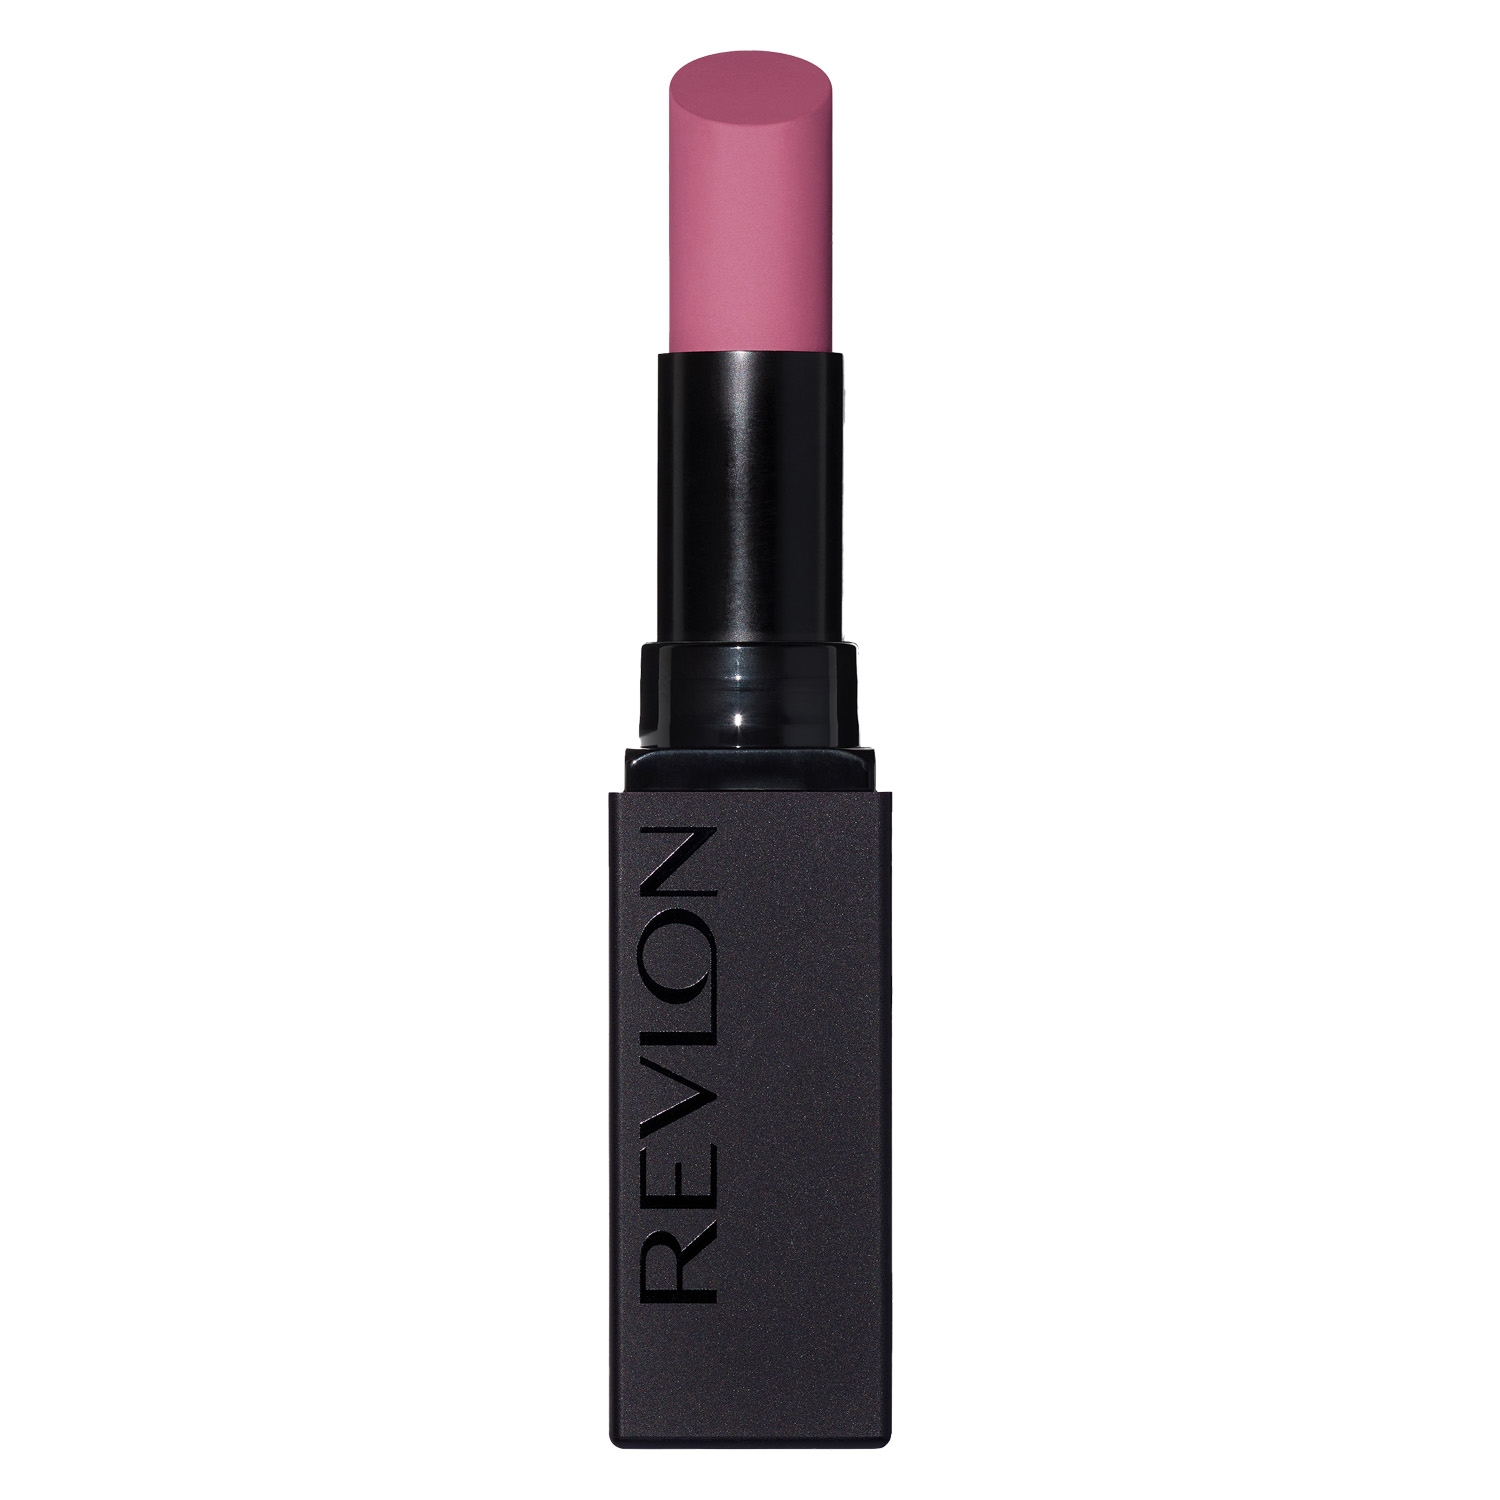 Produktbild von Revlon Lips - Colorstay Suede Ink Lipstick In Charge